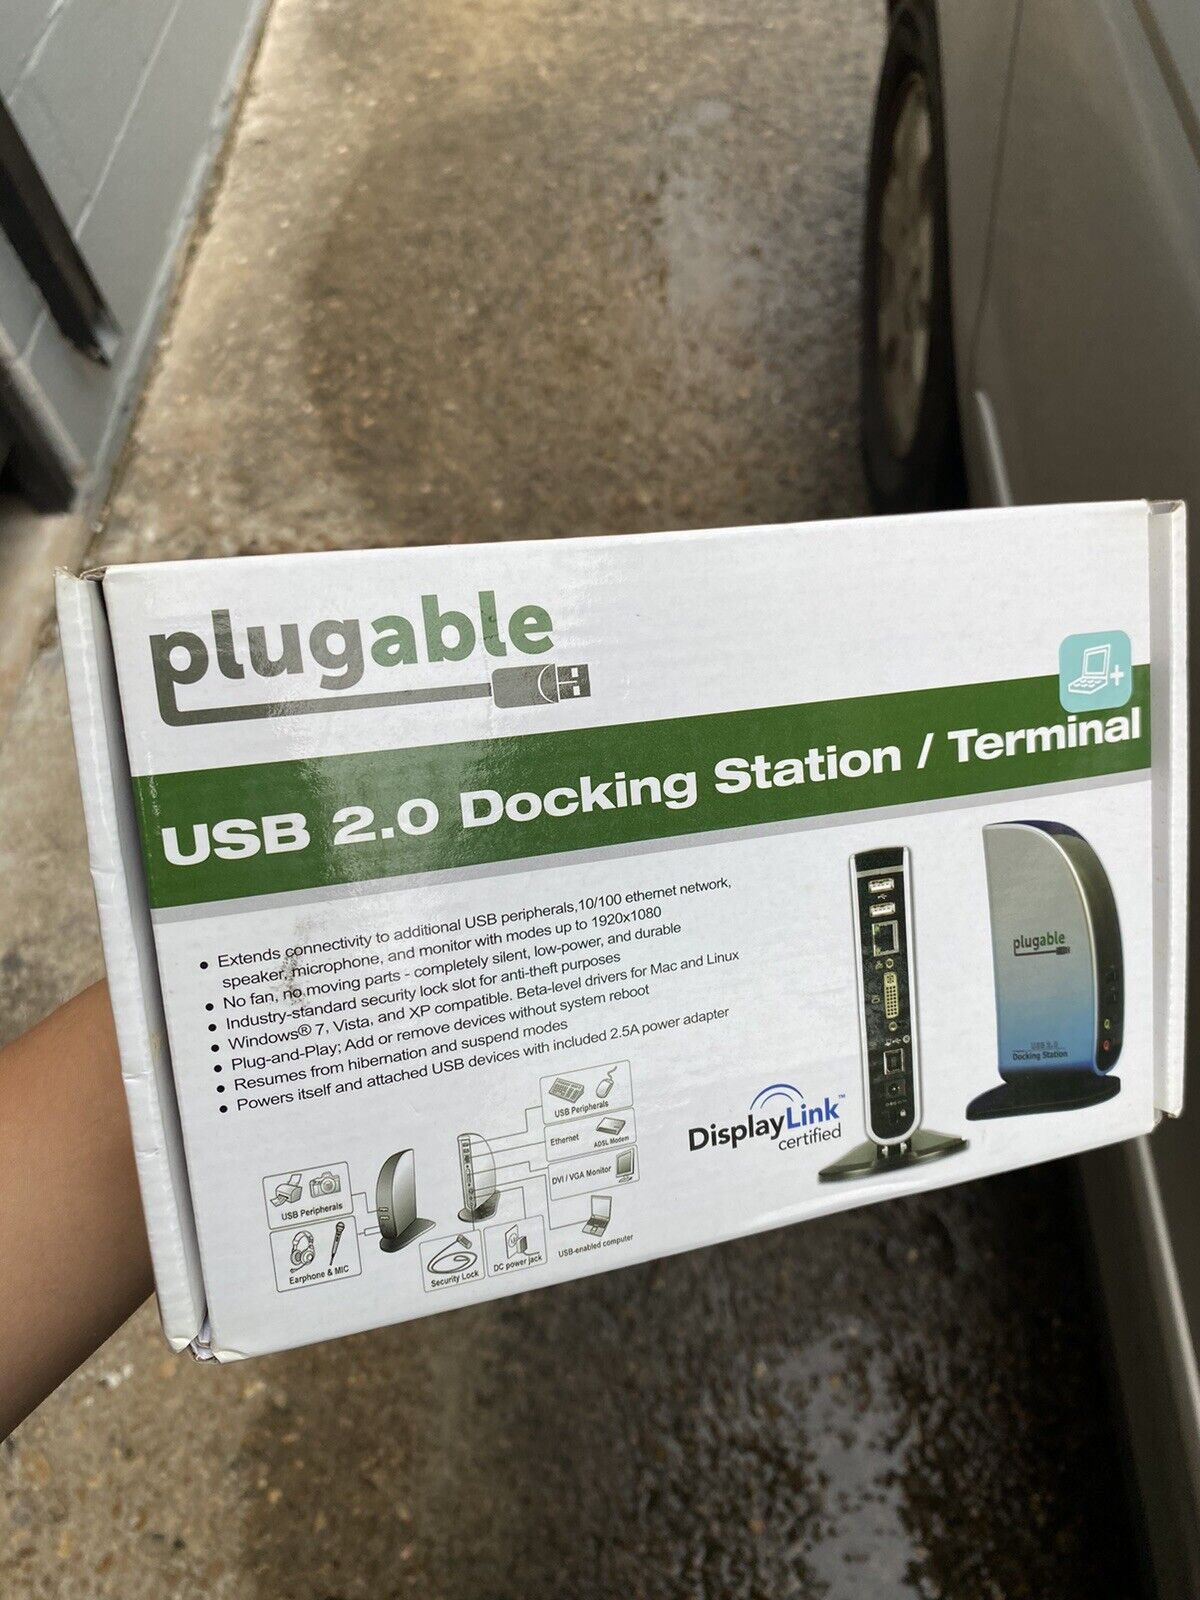 USB 2.0 Docking Station Plugable